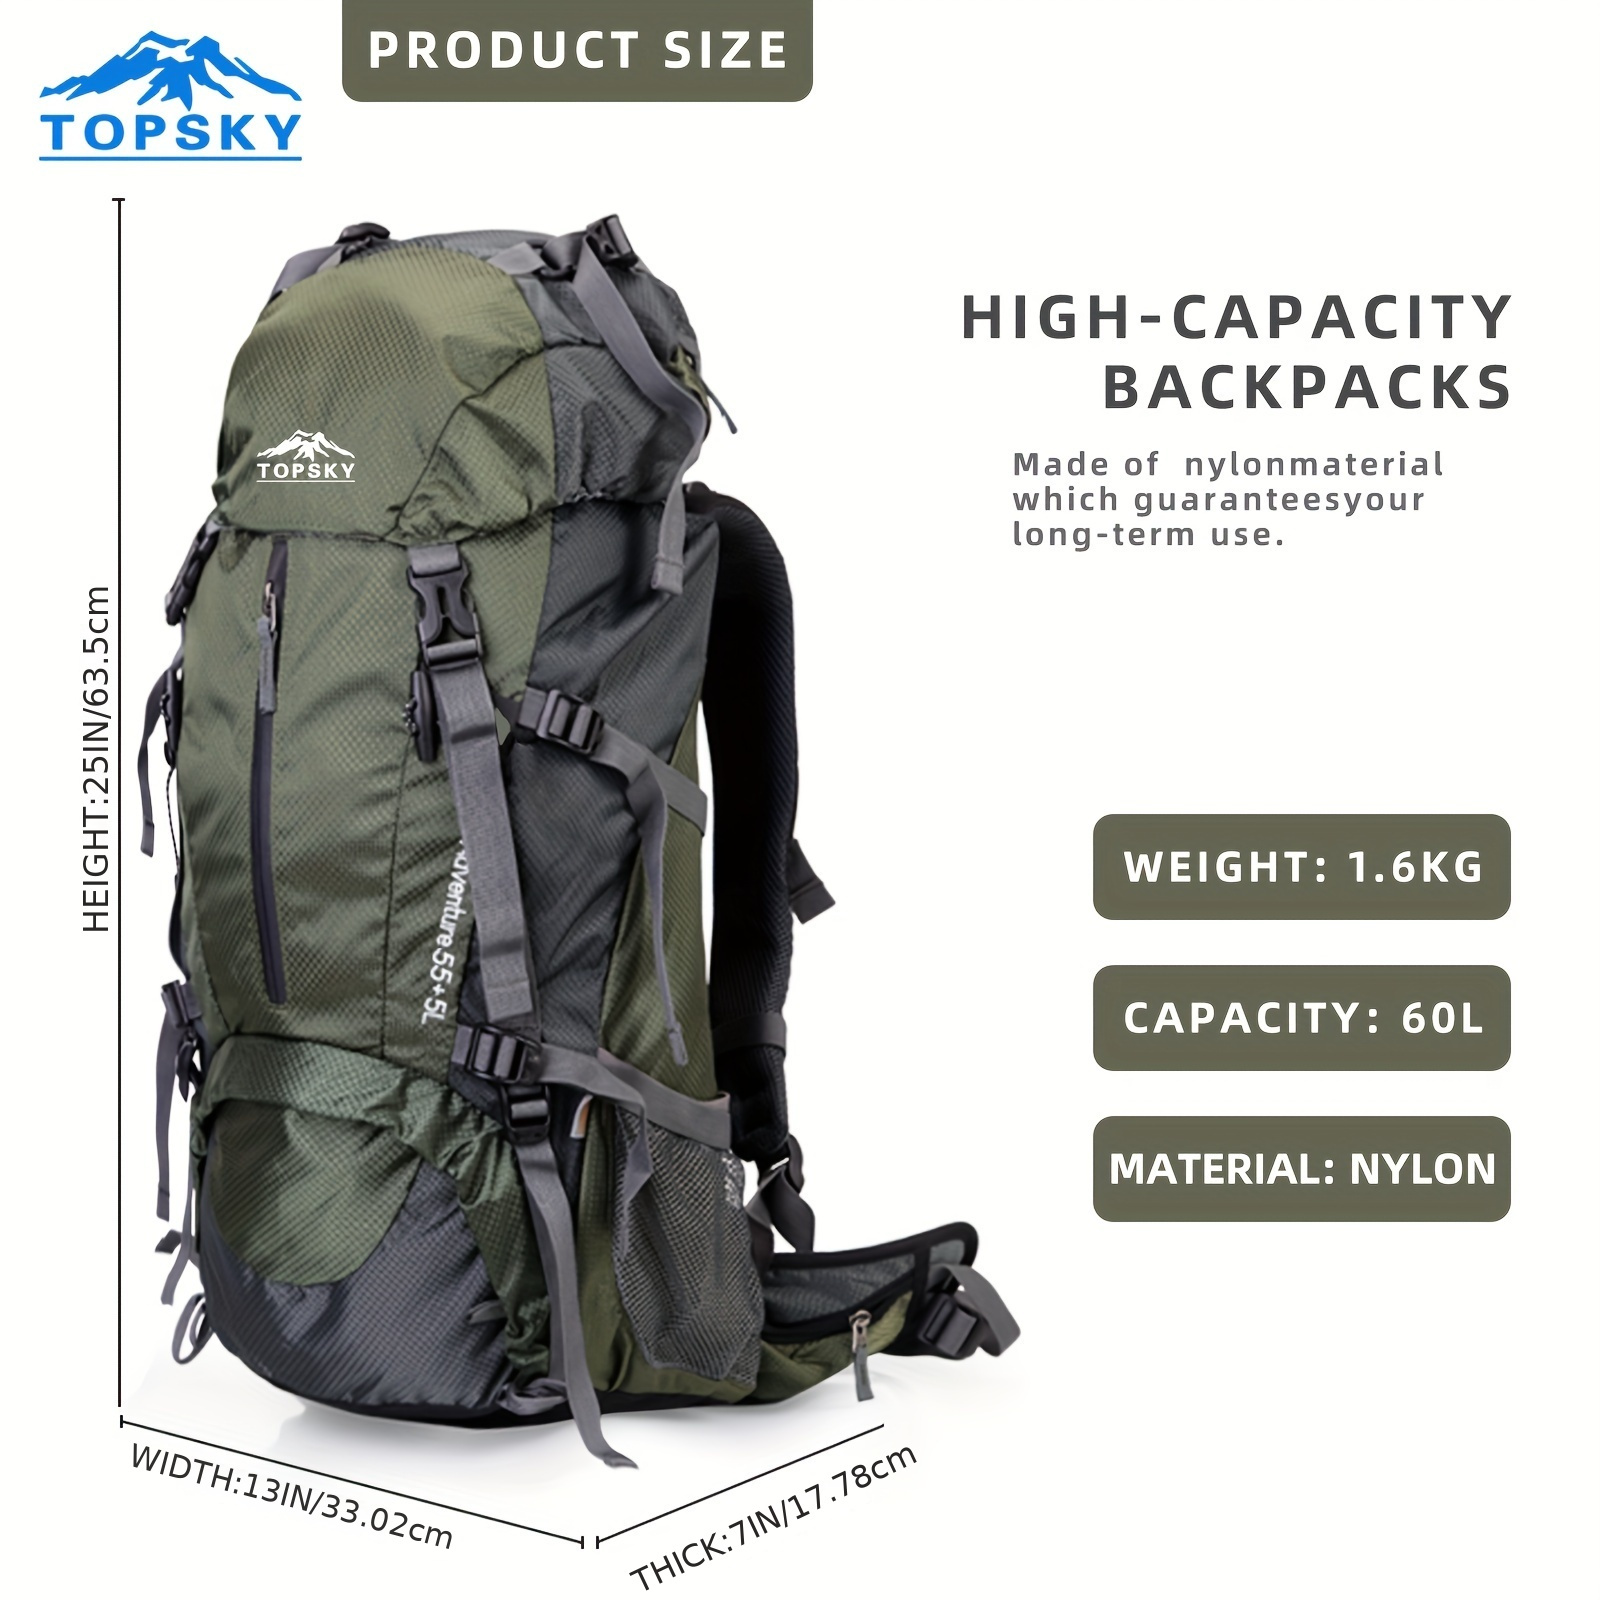 BacBag Trekky Blue Spacious 40 Ltr Trekking Bag Hiking Backpack